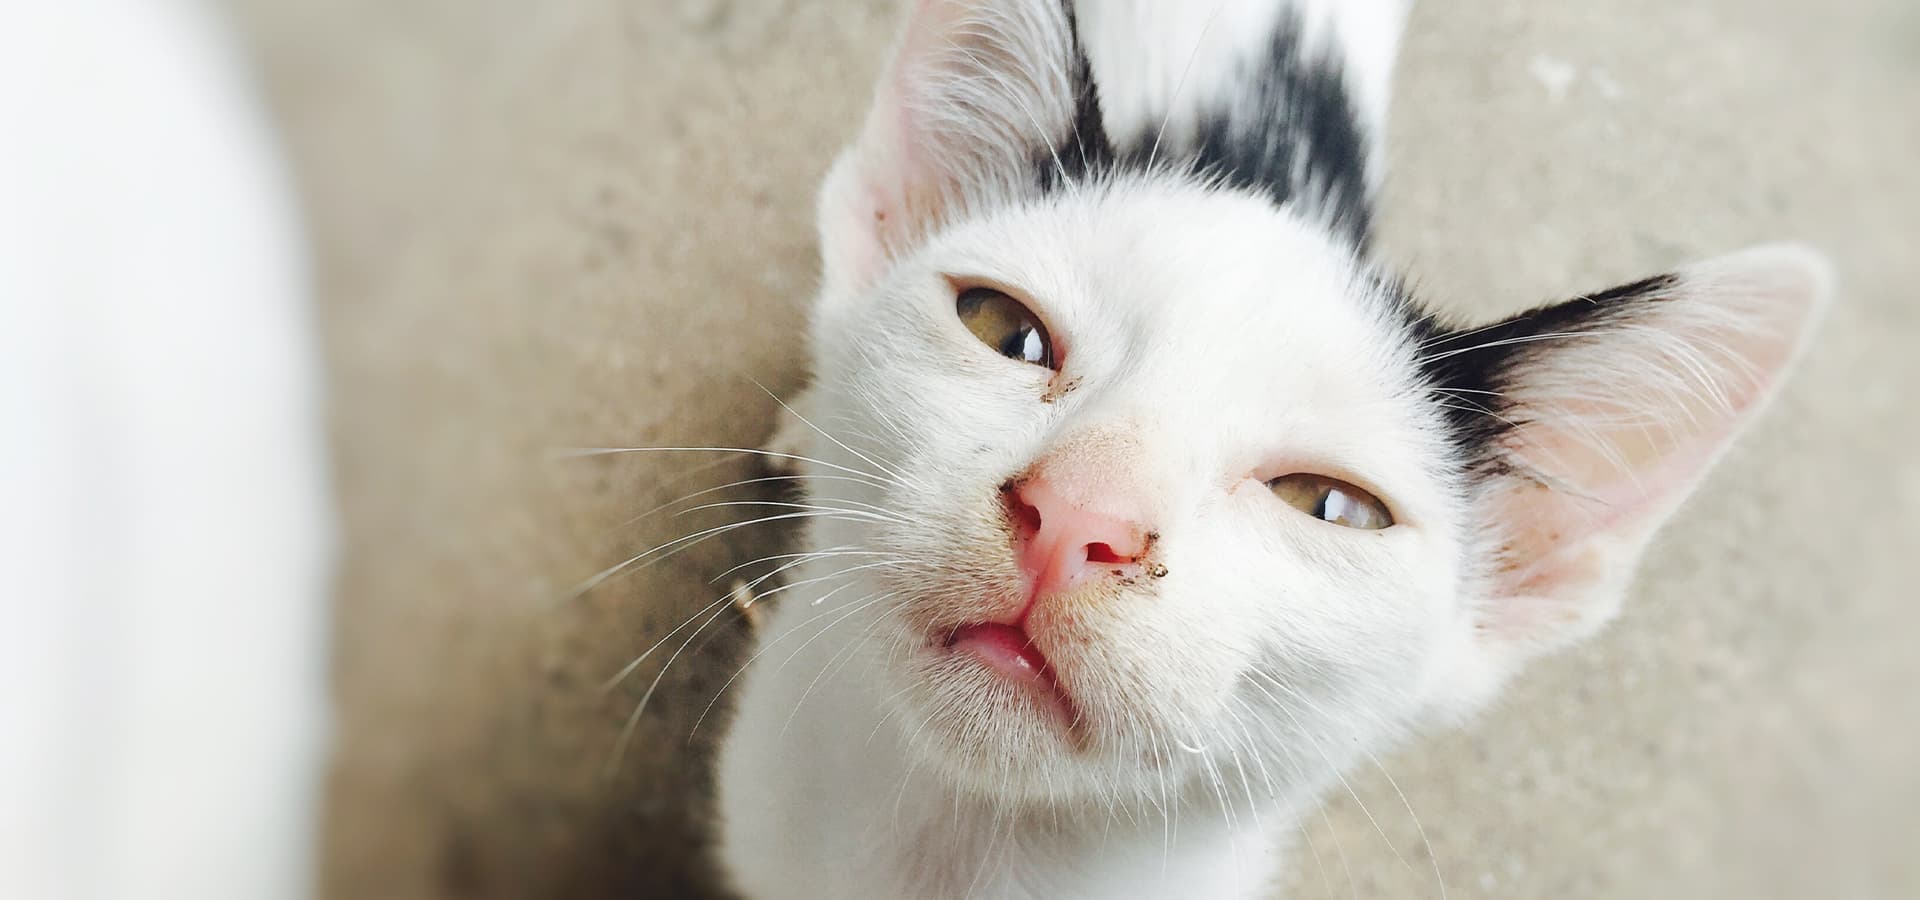 Katze mit verkrusteten Augen und Nase guckt in die Kamera